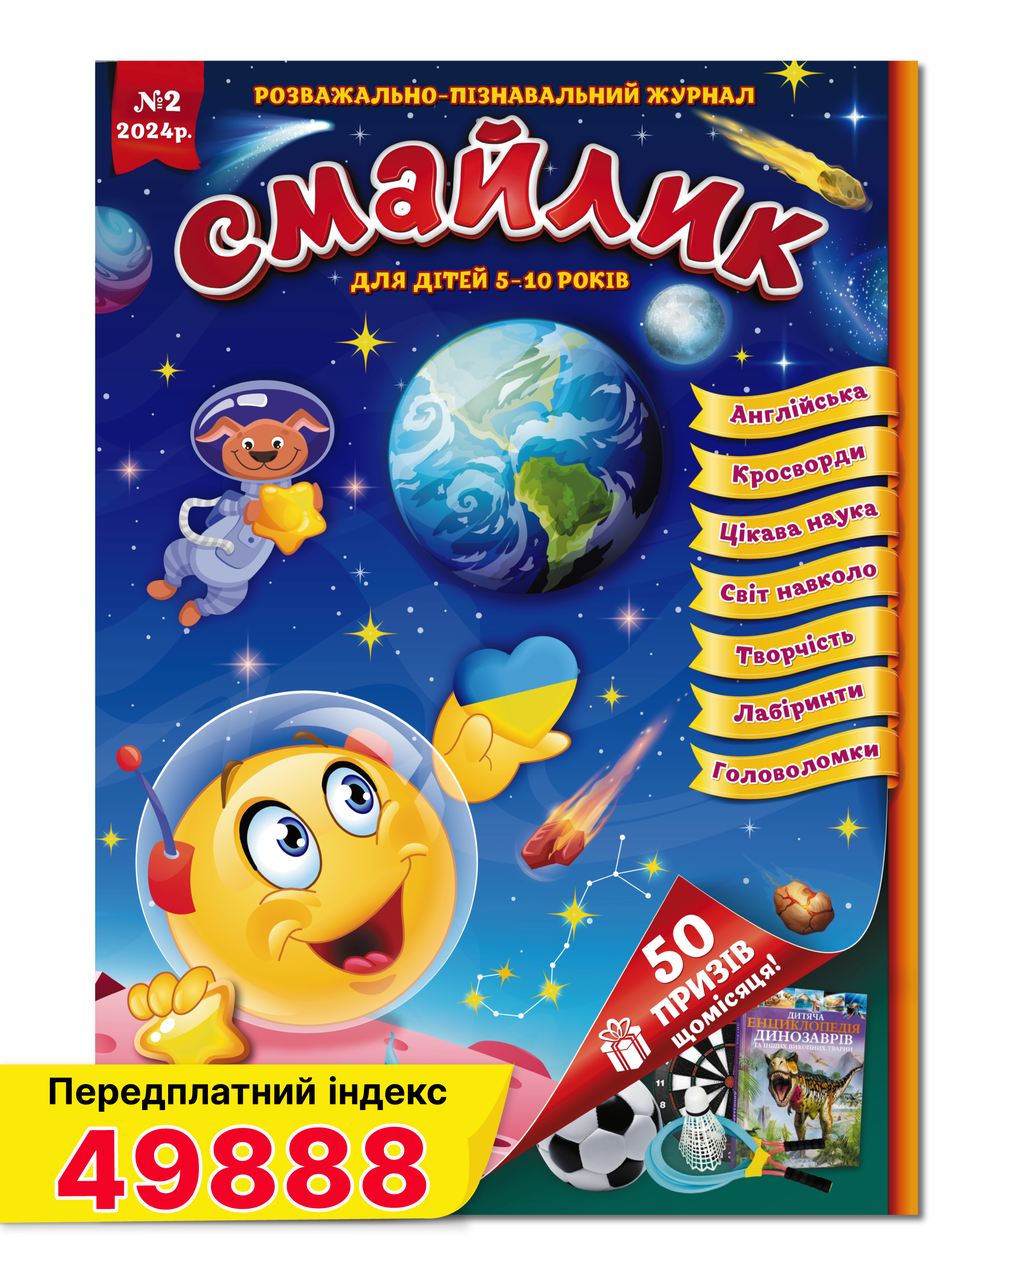 Журнал для дітей Смайлик №2 лютий 2024 року укр.